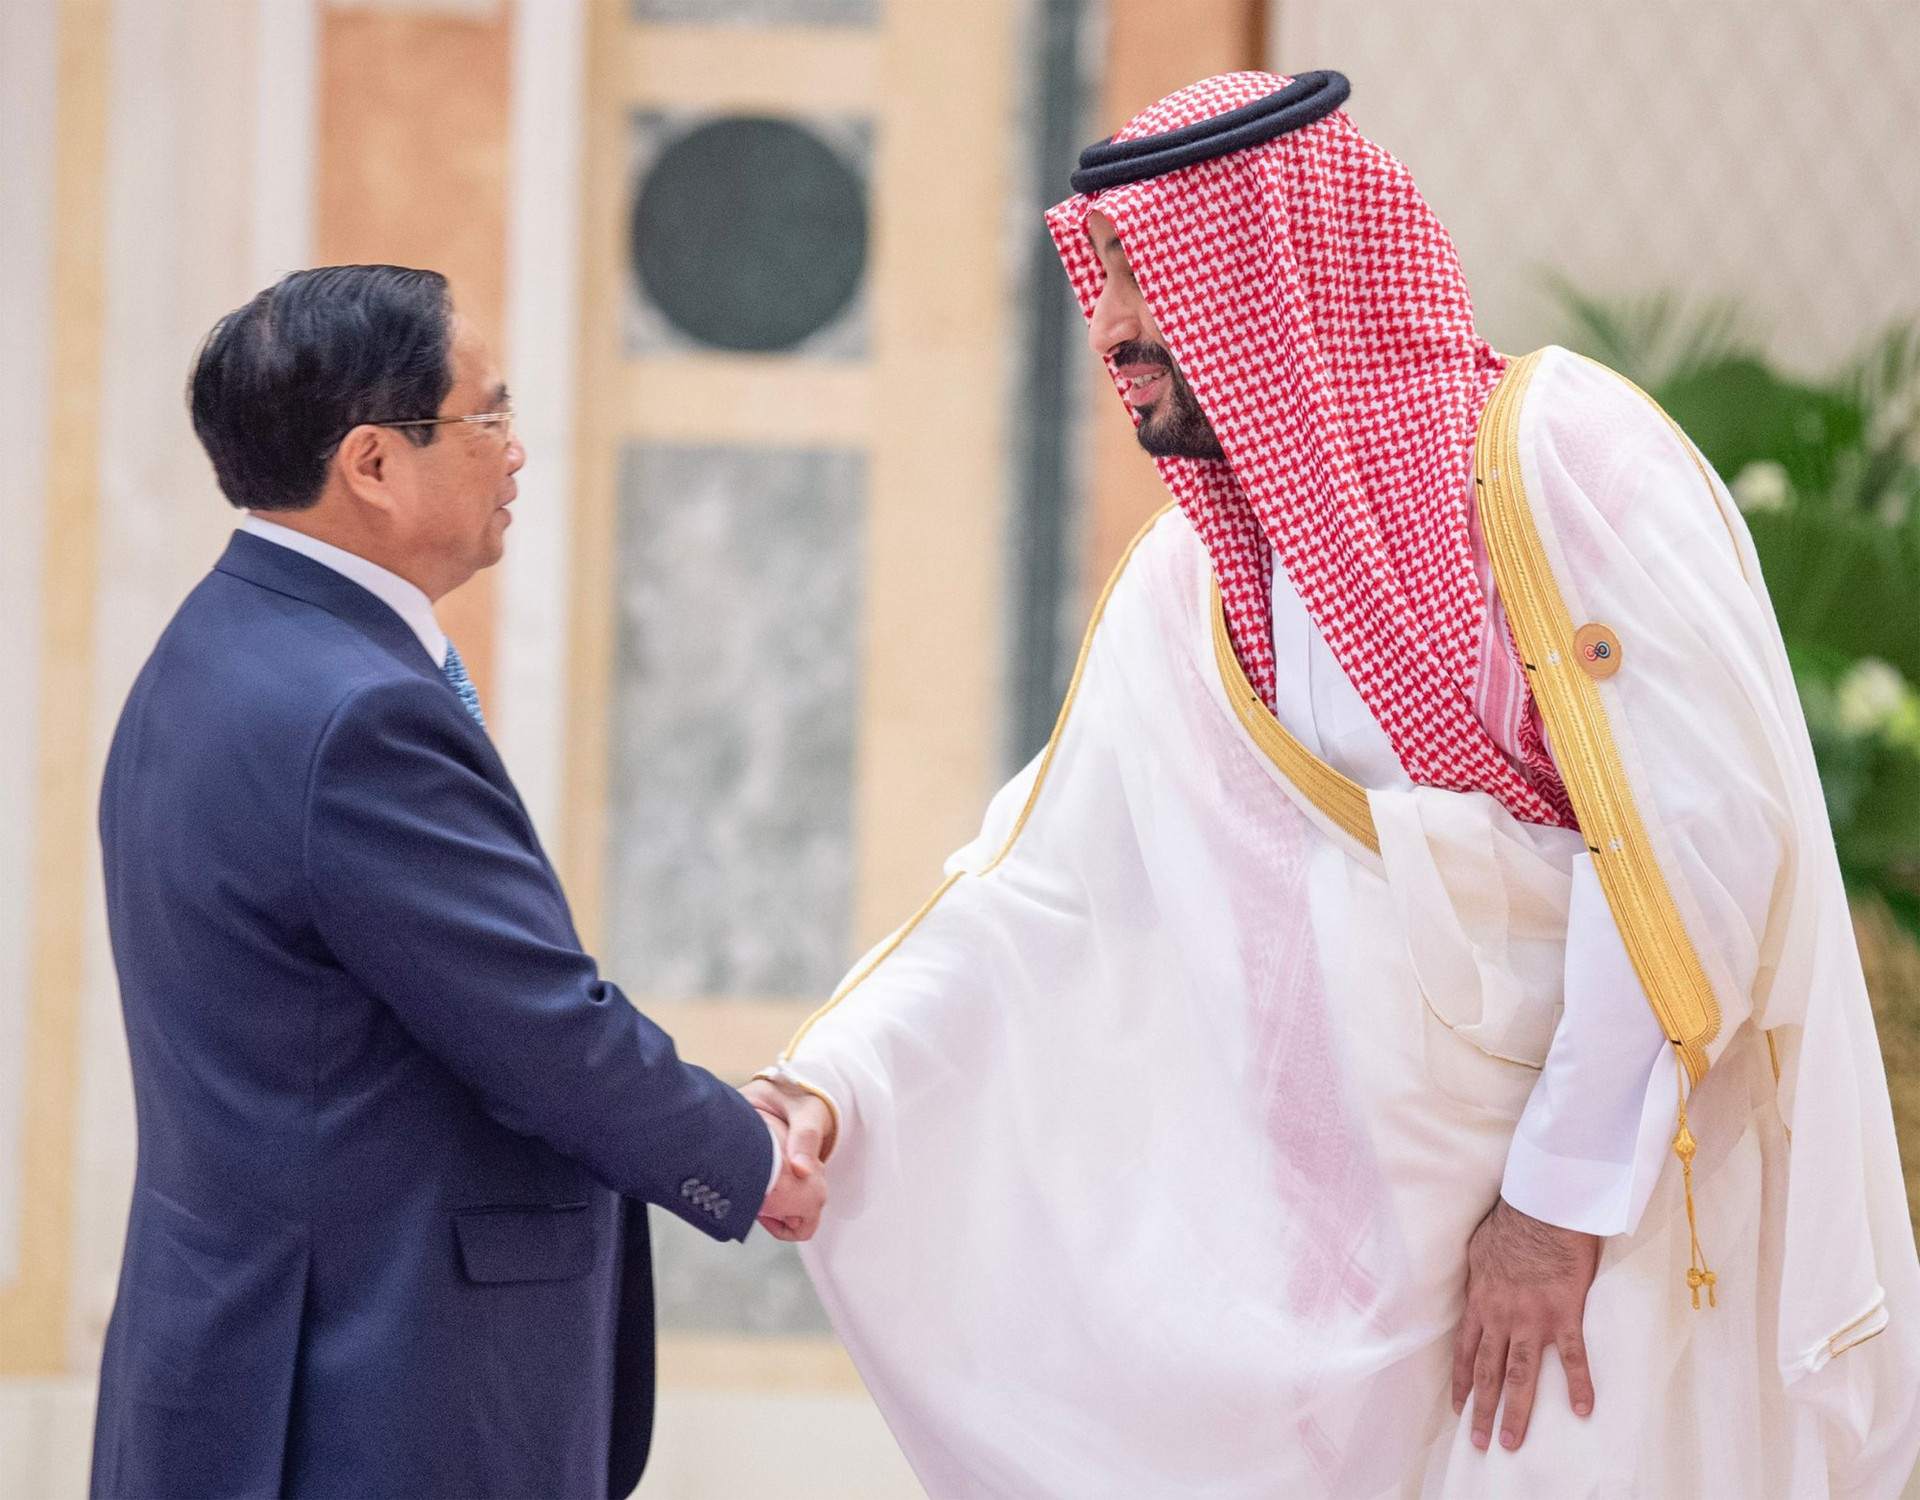 Thủ tướng Phạm Minh Chính hội đàm với Hoàng Thái tử, Thủ tướng Saudi Arabia - Ảnh 1.